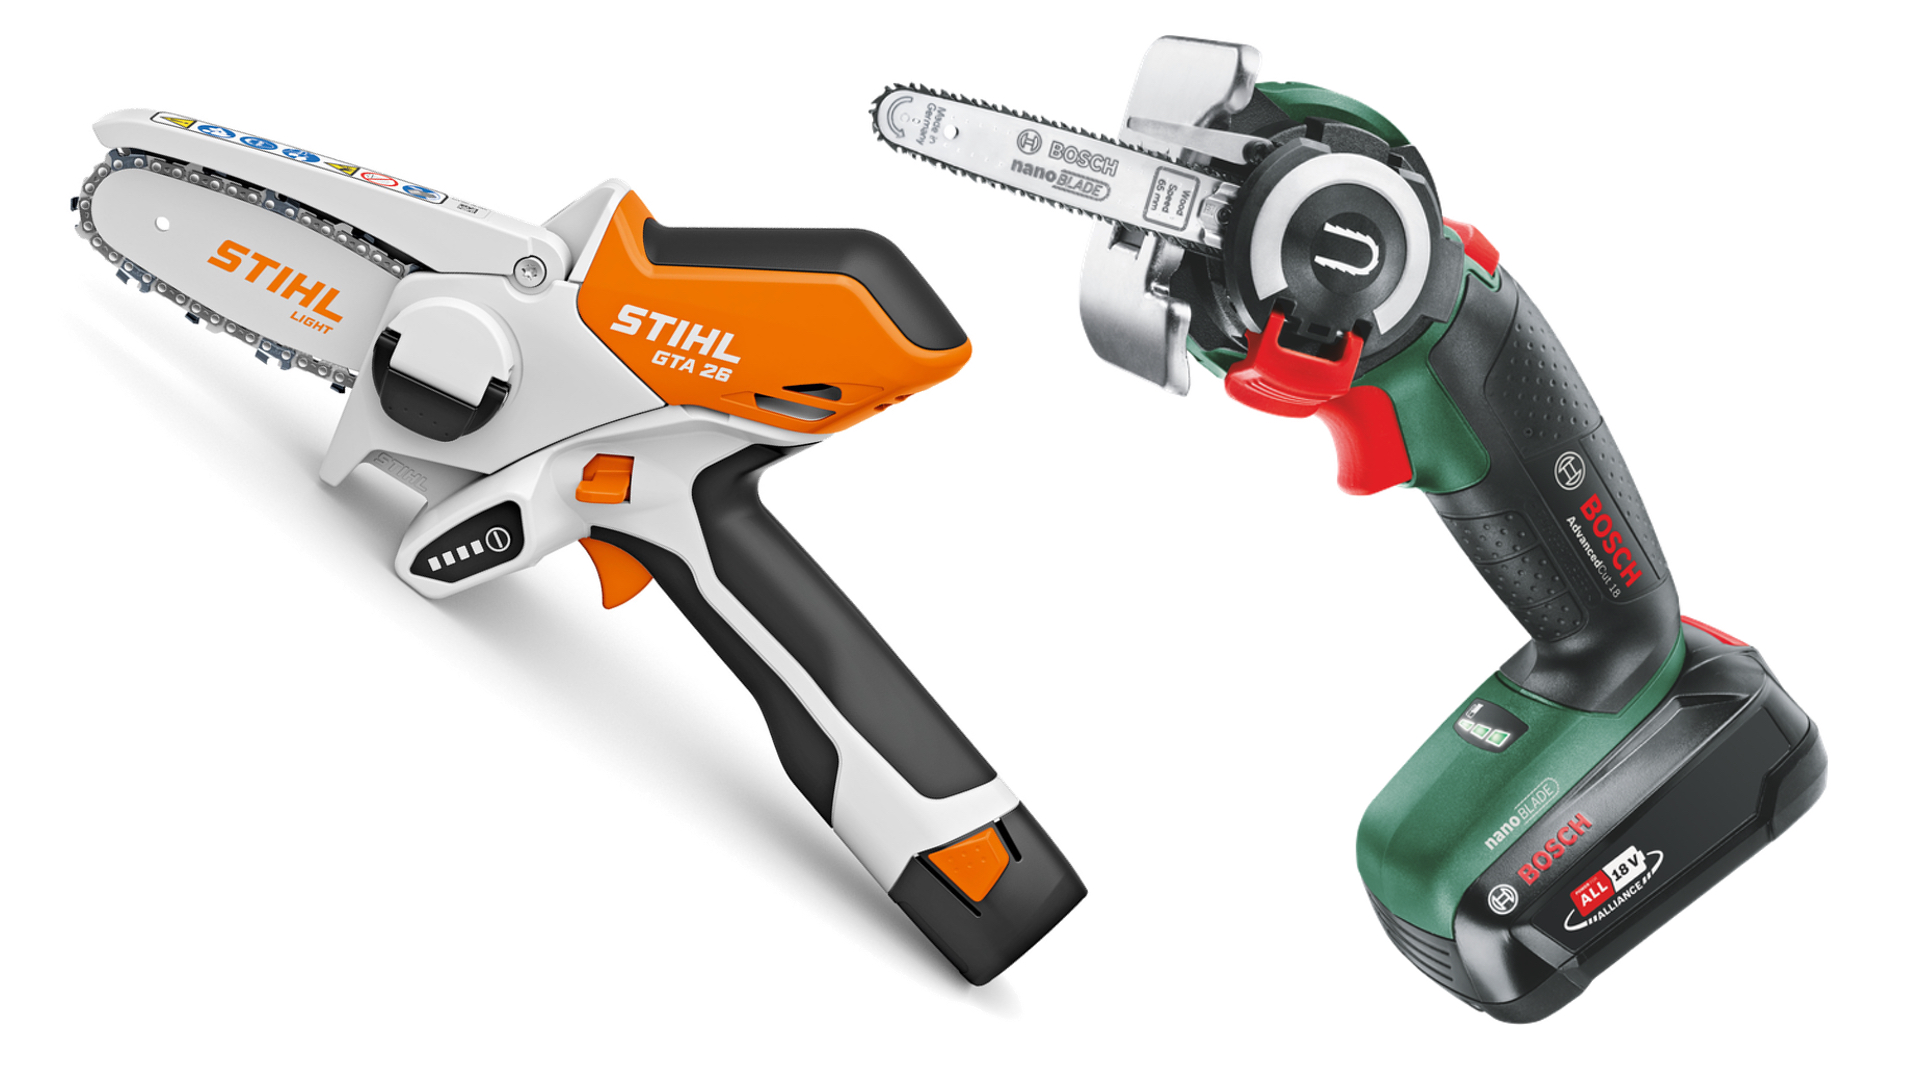 Stihl GTA 26 vs Bosch AdvancedCut 18: two top mini chainsaws